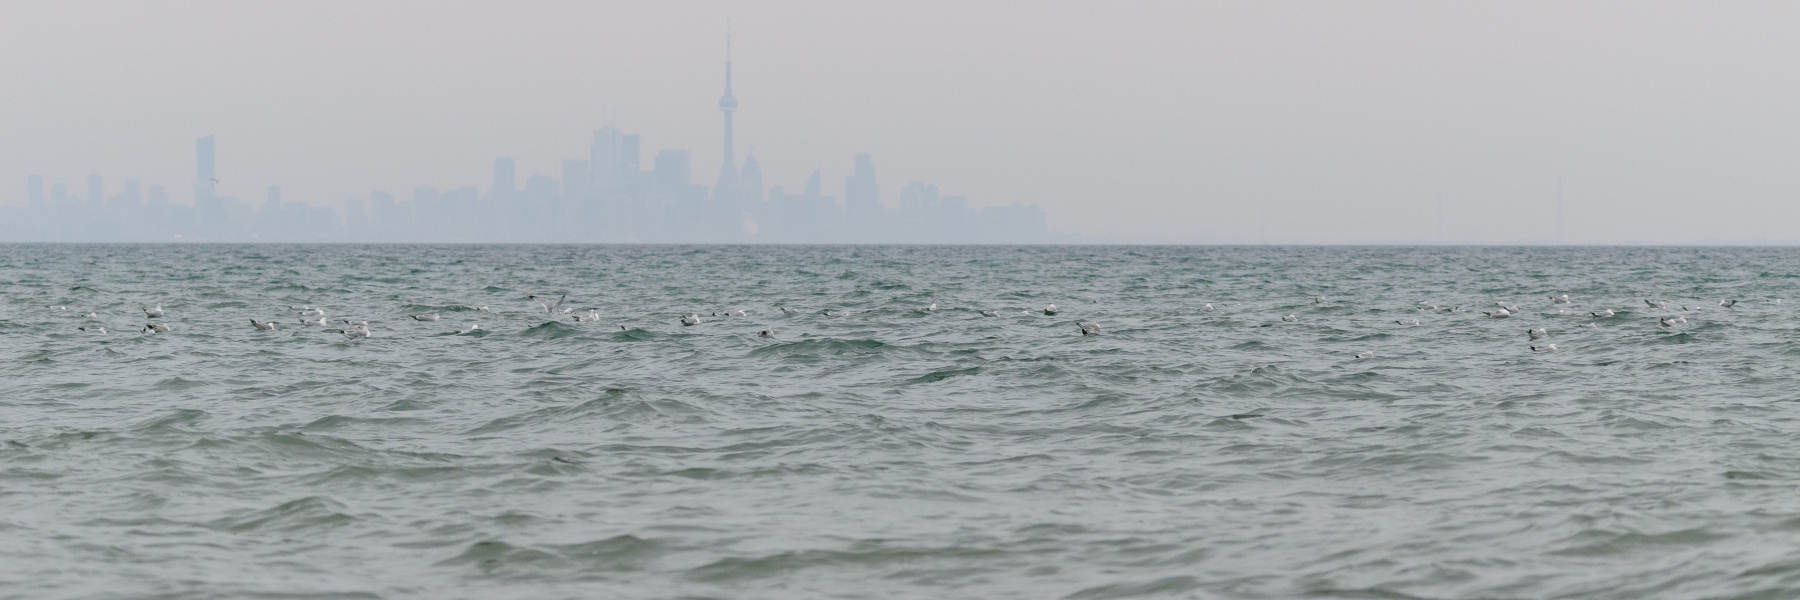 Seagulls against a misty Toronto skyline.